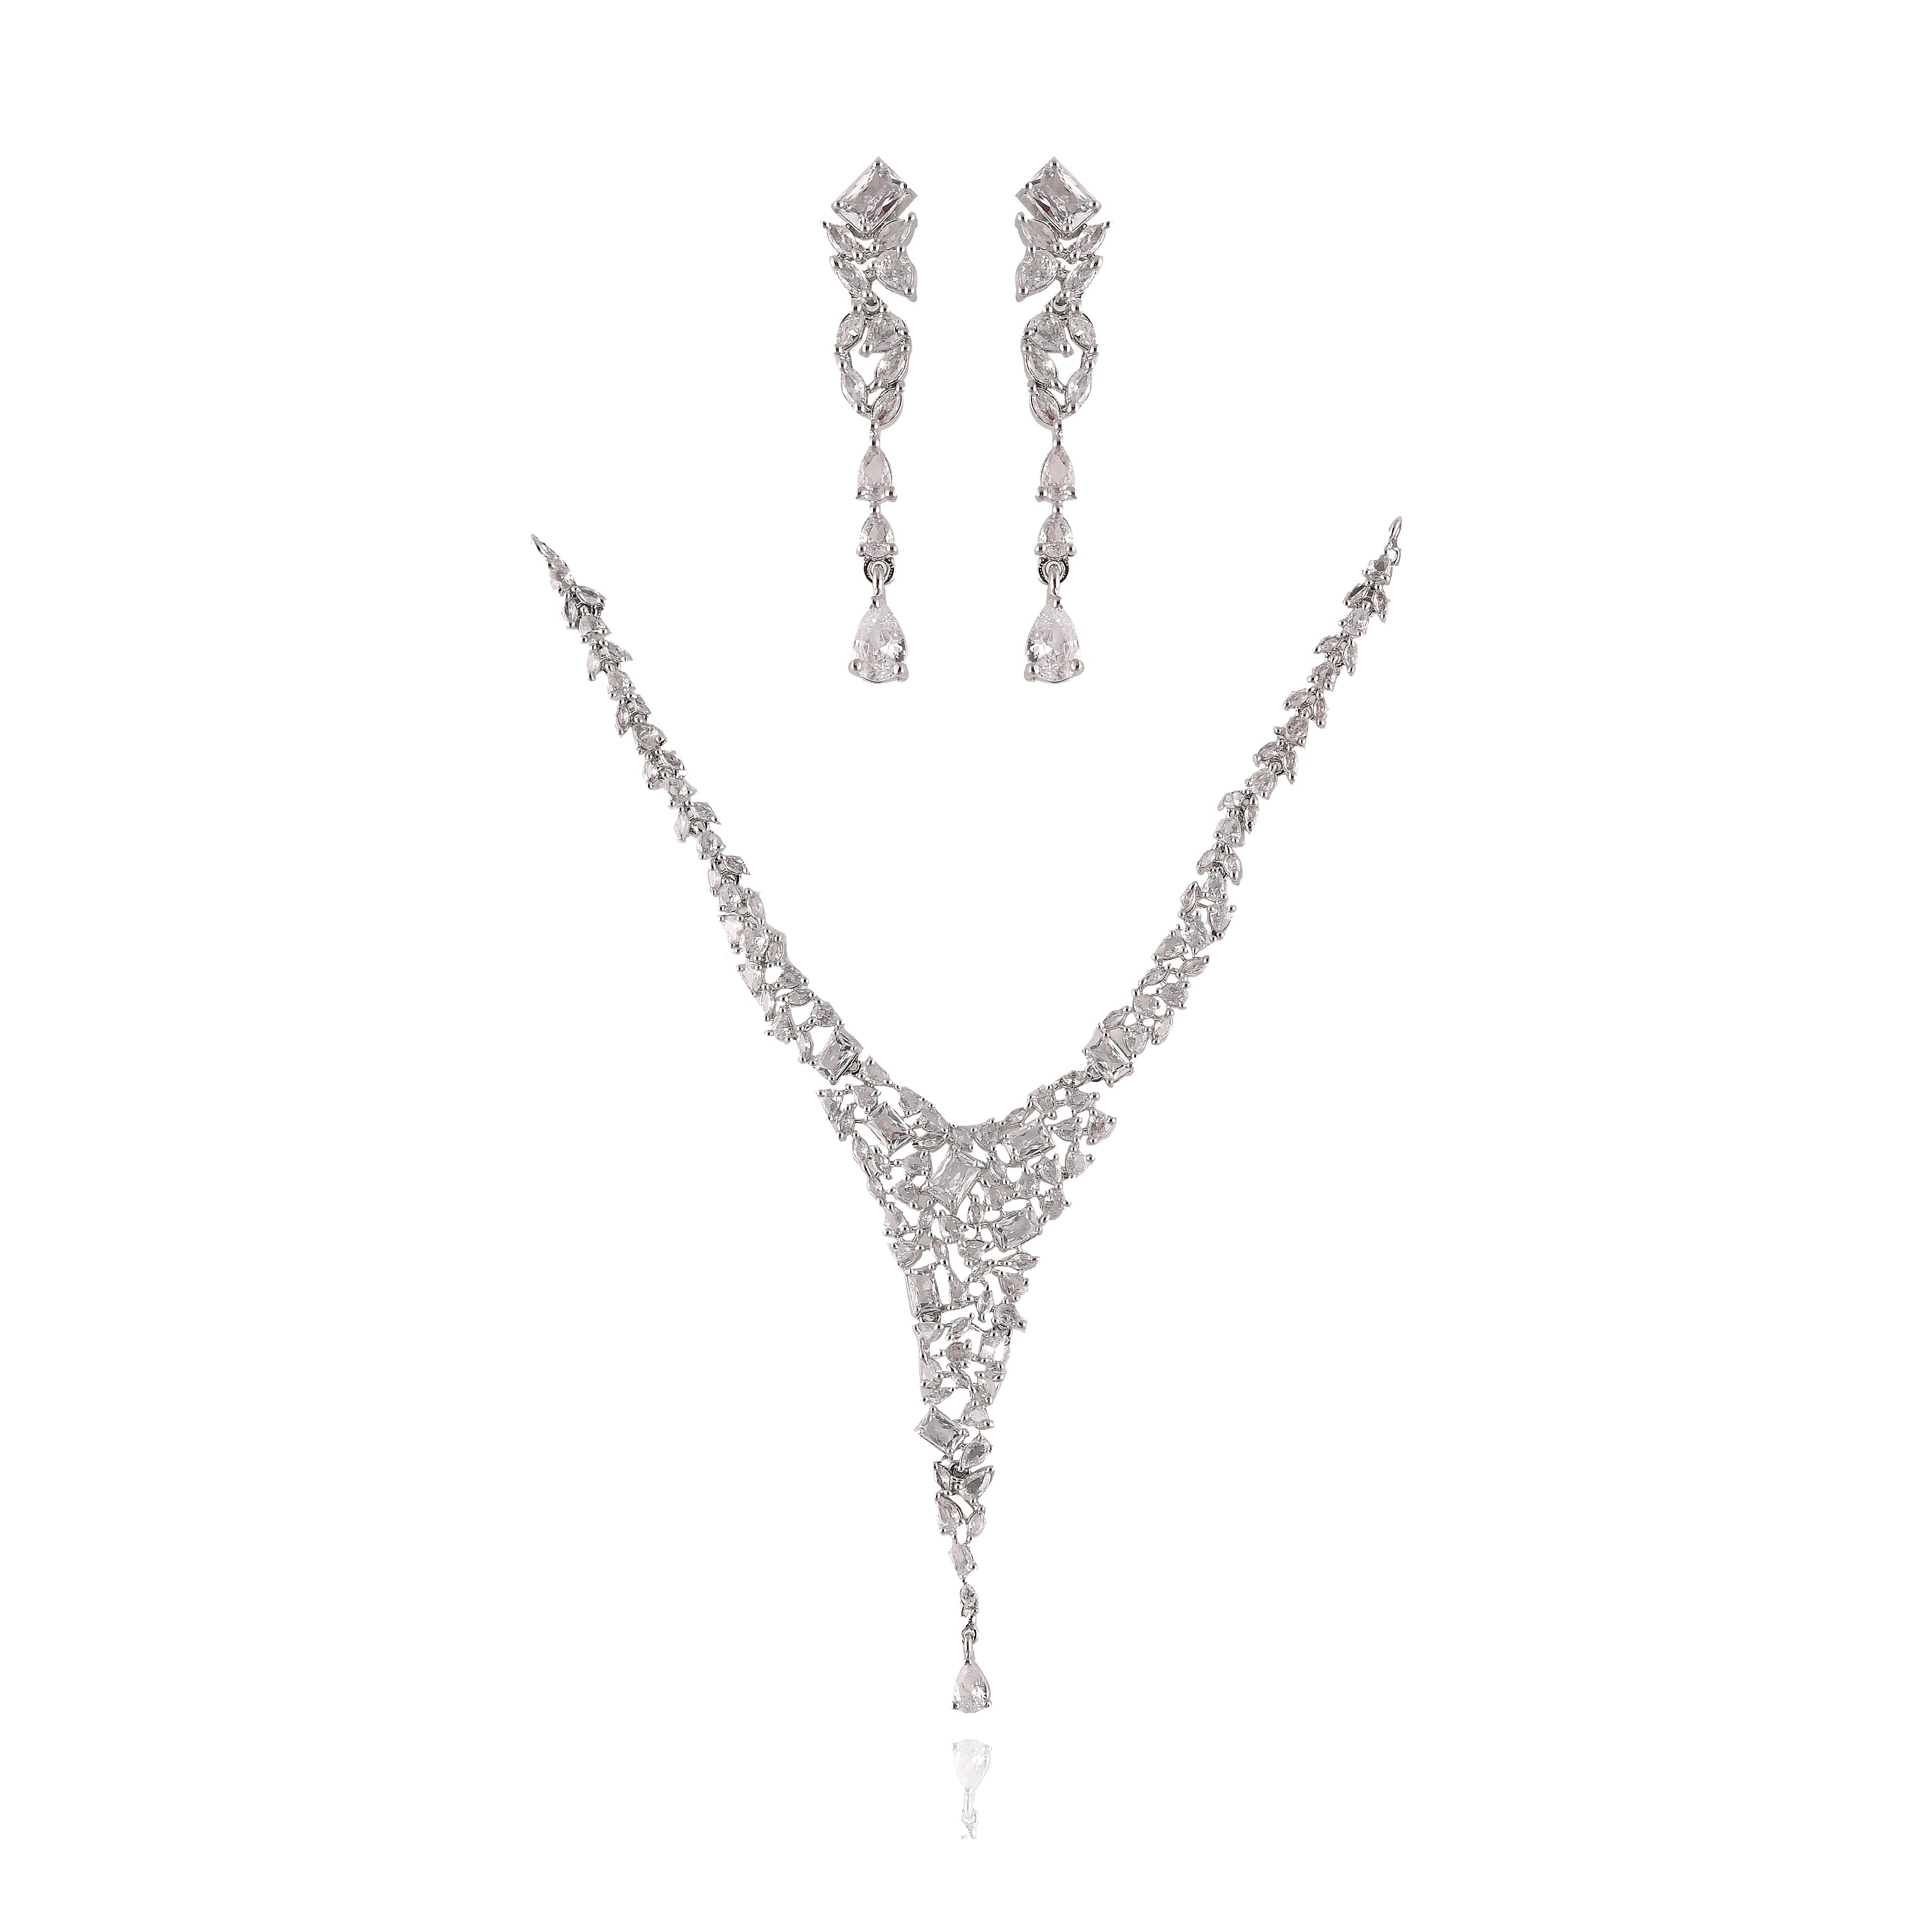 Elegance Silver Zircon Necklace